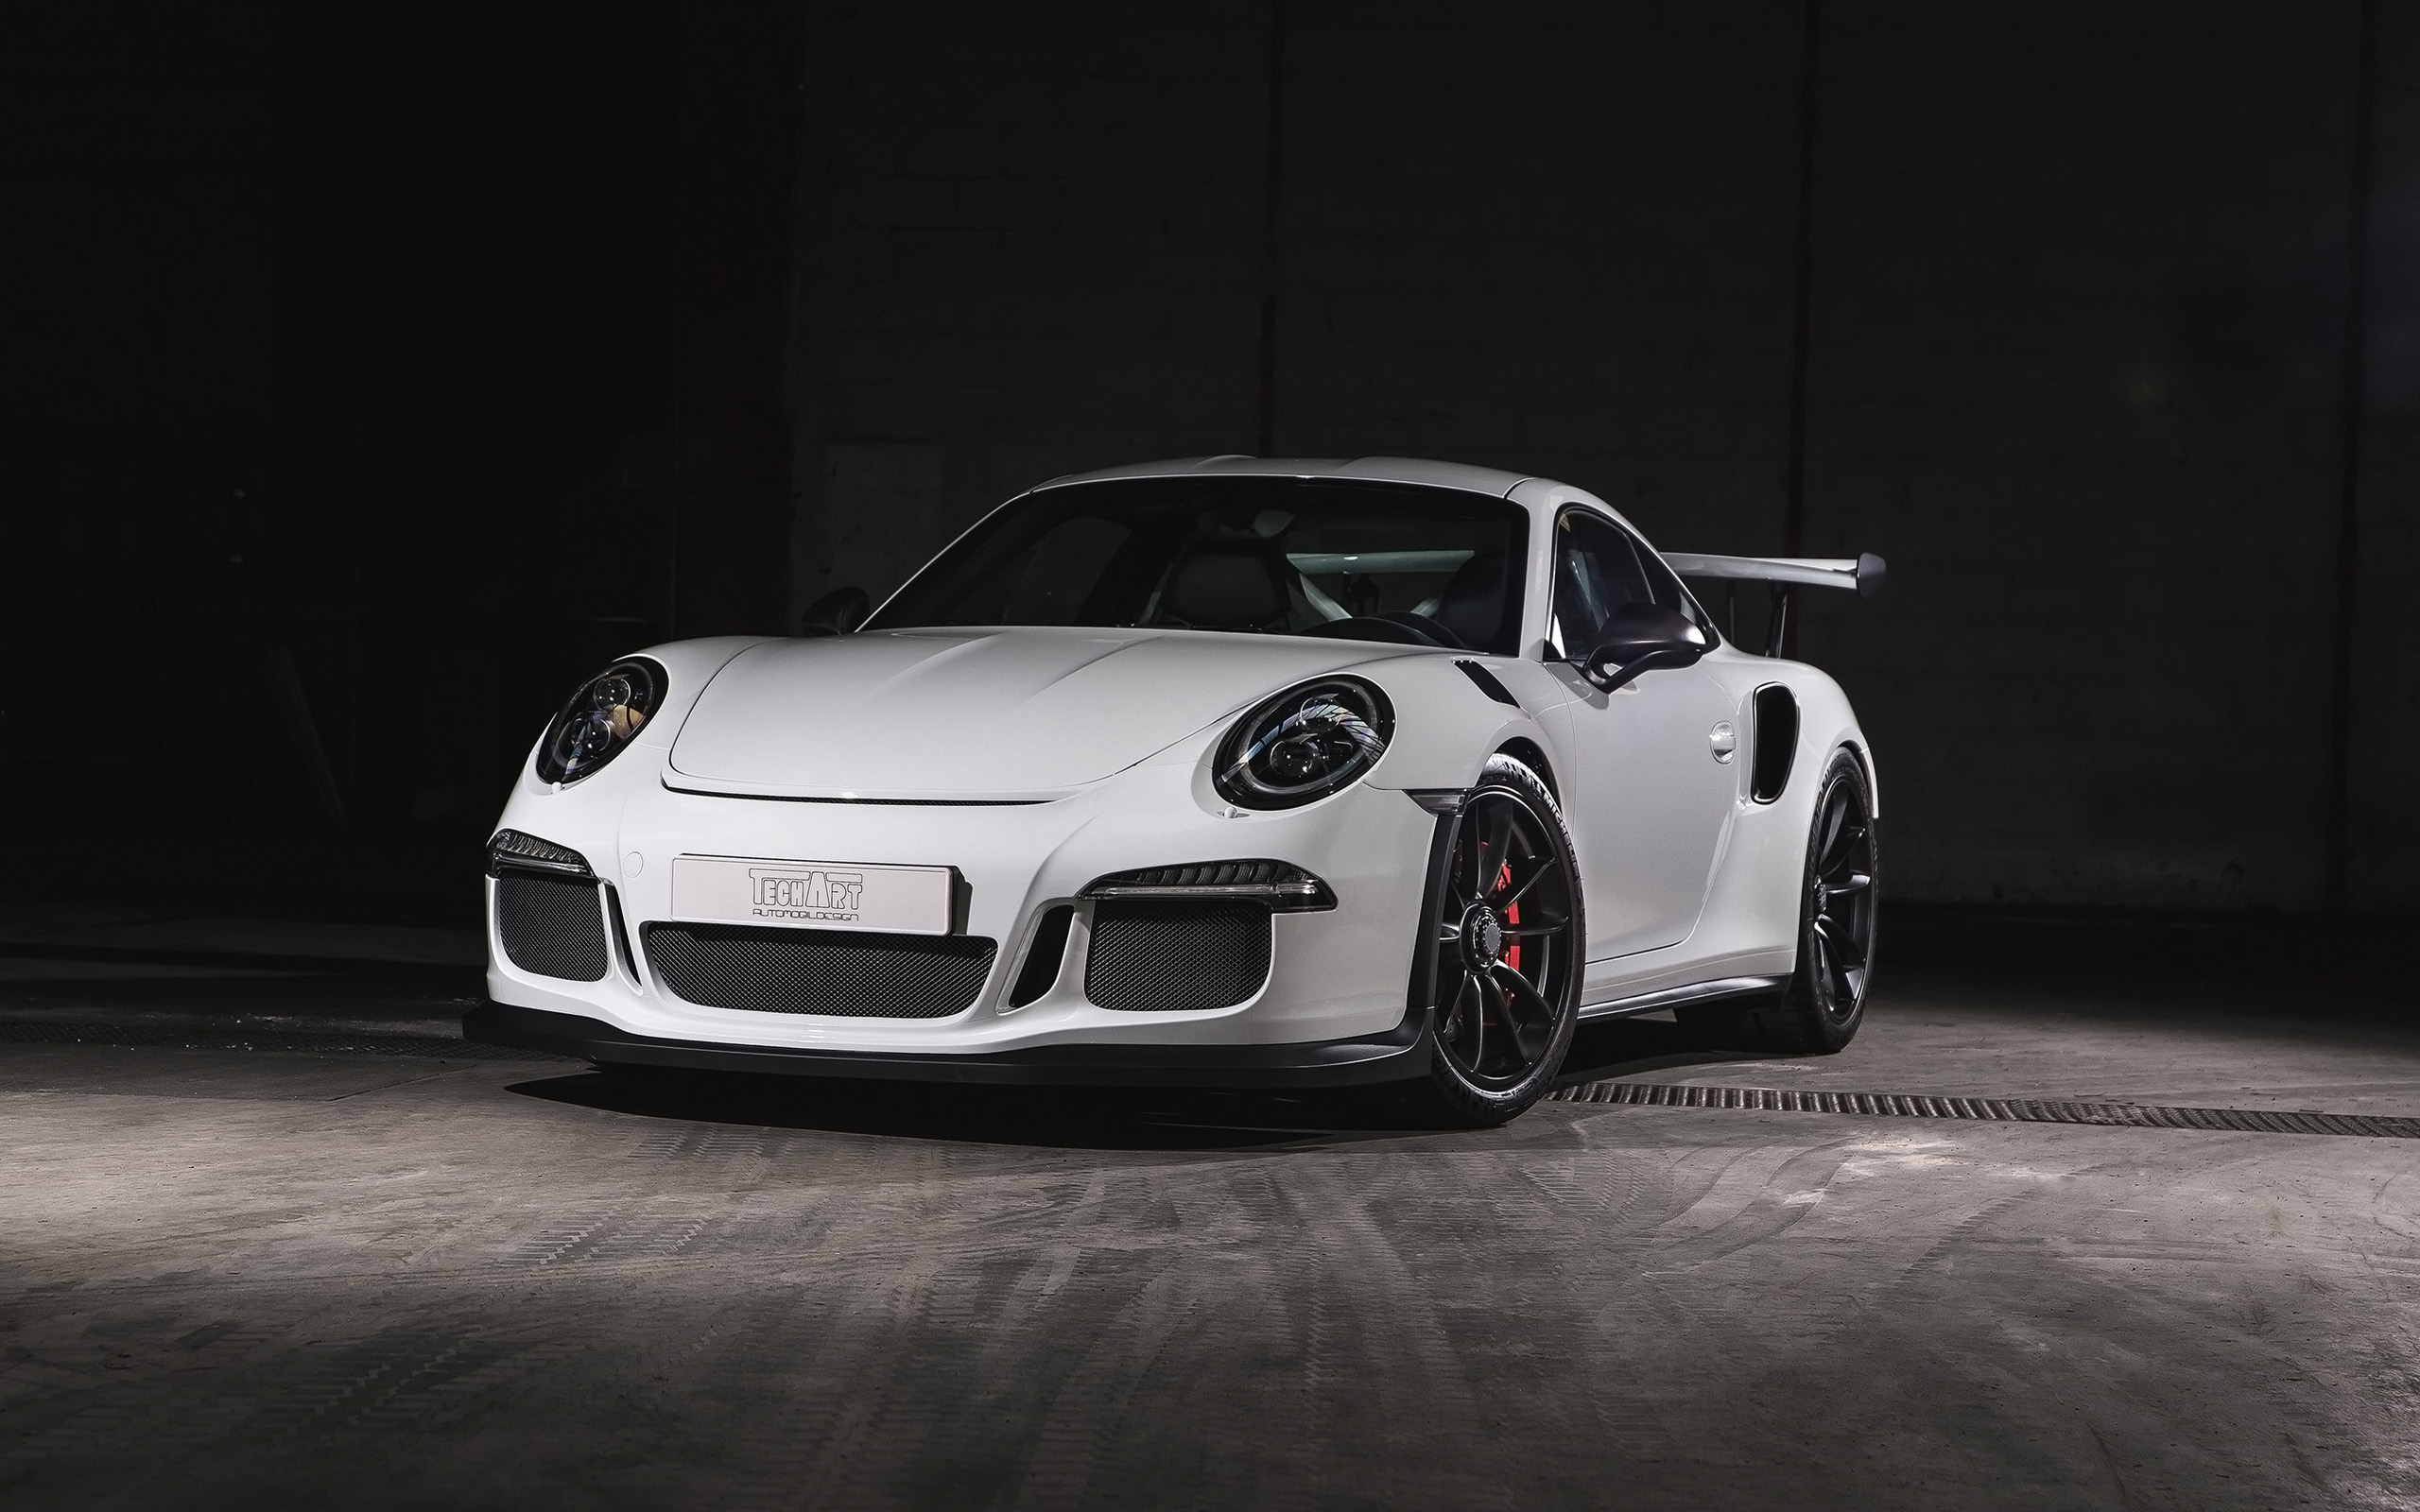 2016 Techart Porsche 911 Gt3 Rs Carbon Sport Wallpaper Hd Car Wallpapers Id 6600